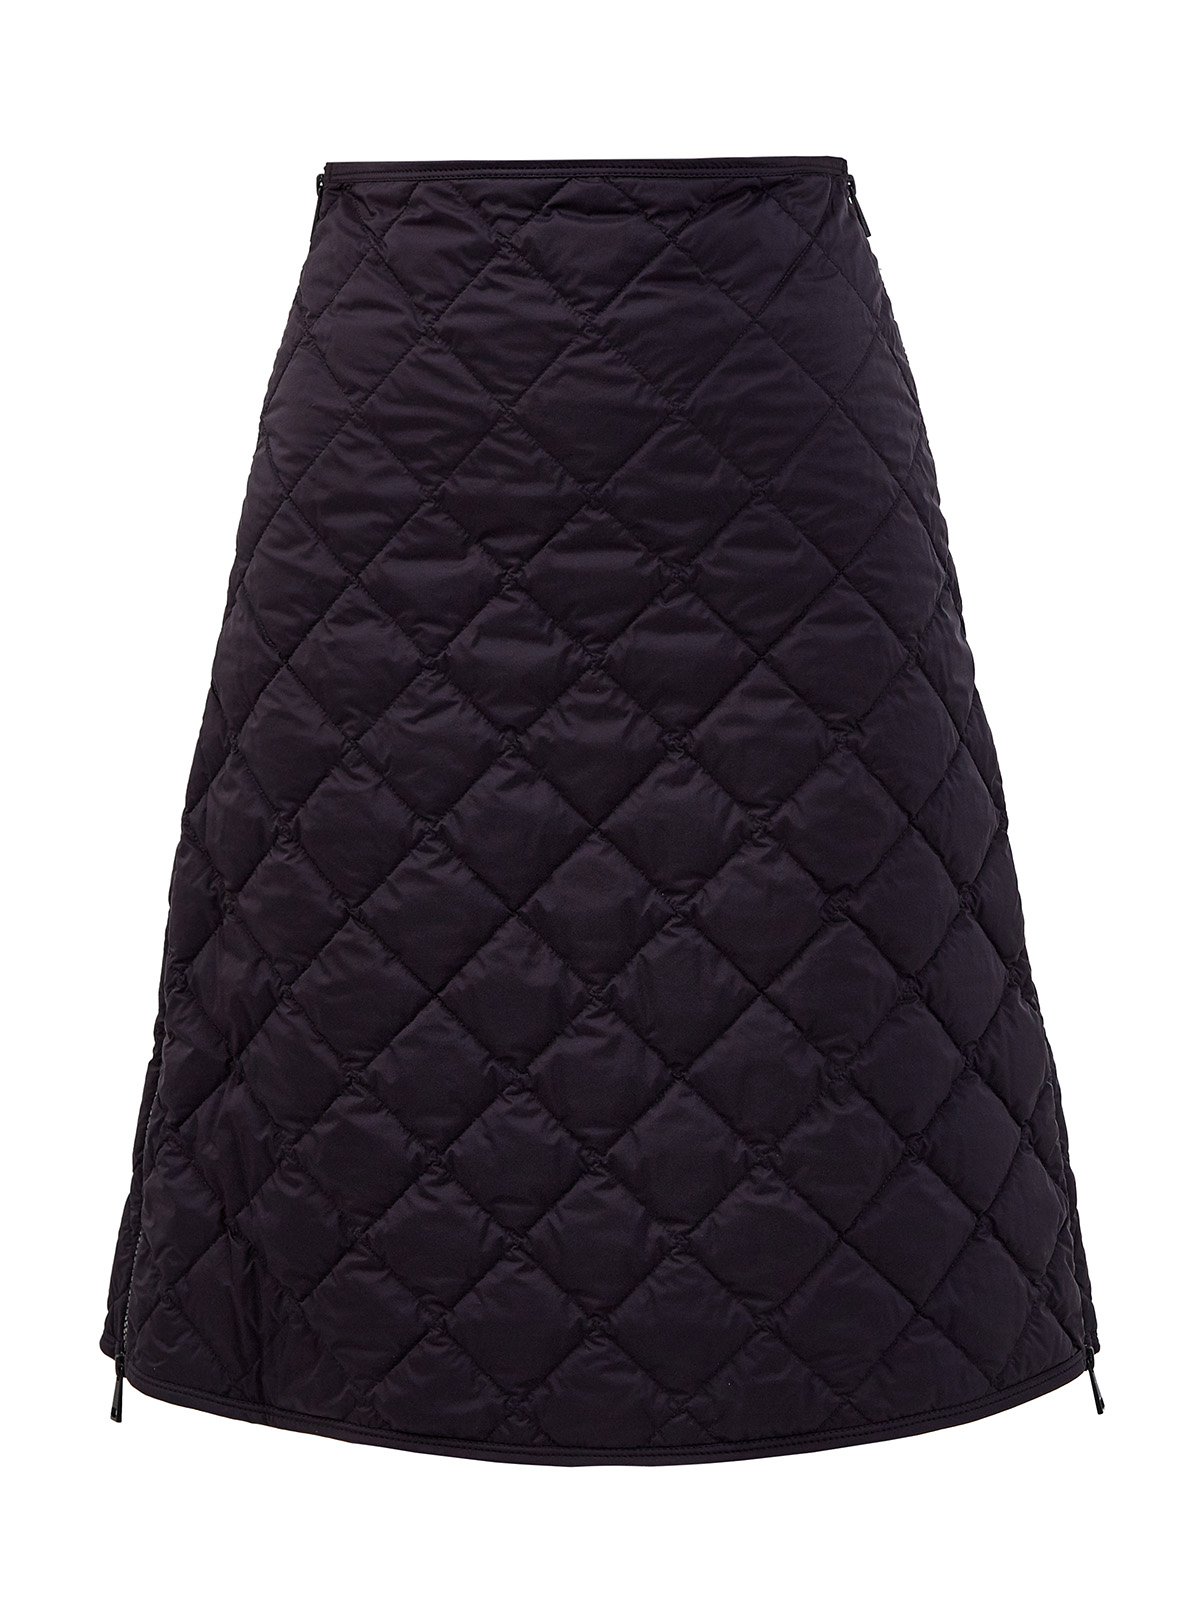 Стеганая юбка-трапеция с боковыми застежками на молниях MONCLER, цвет черный, размер M;L;XL - фото 1